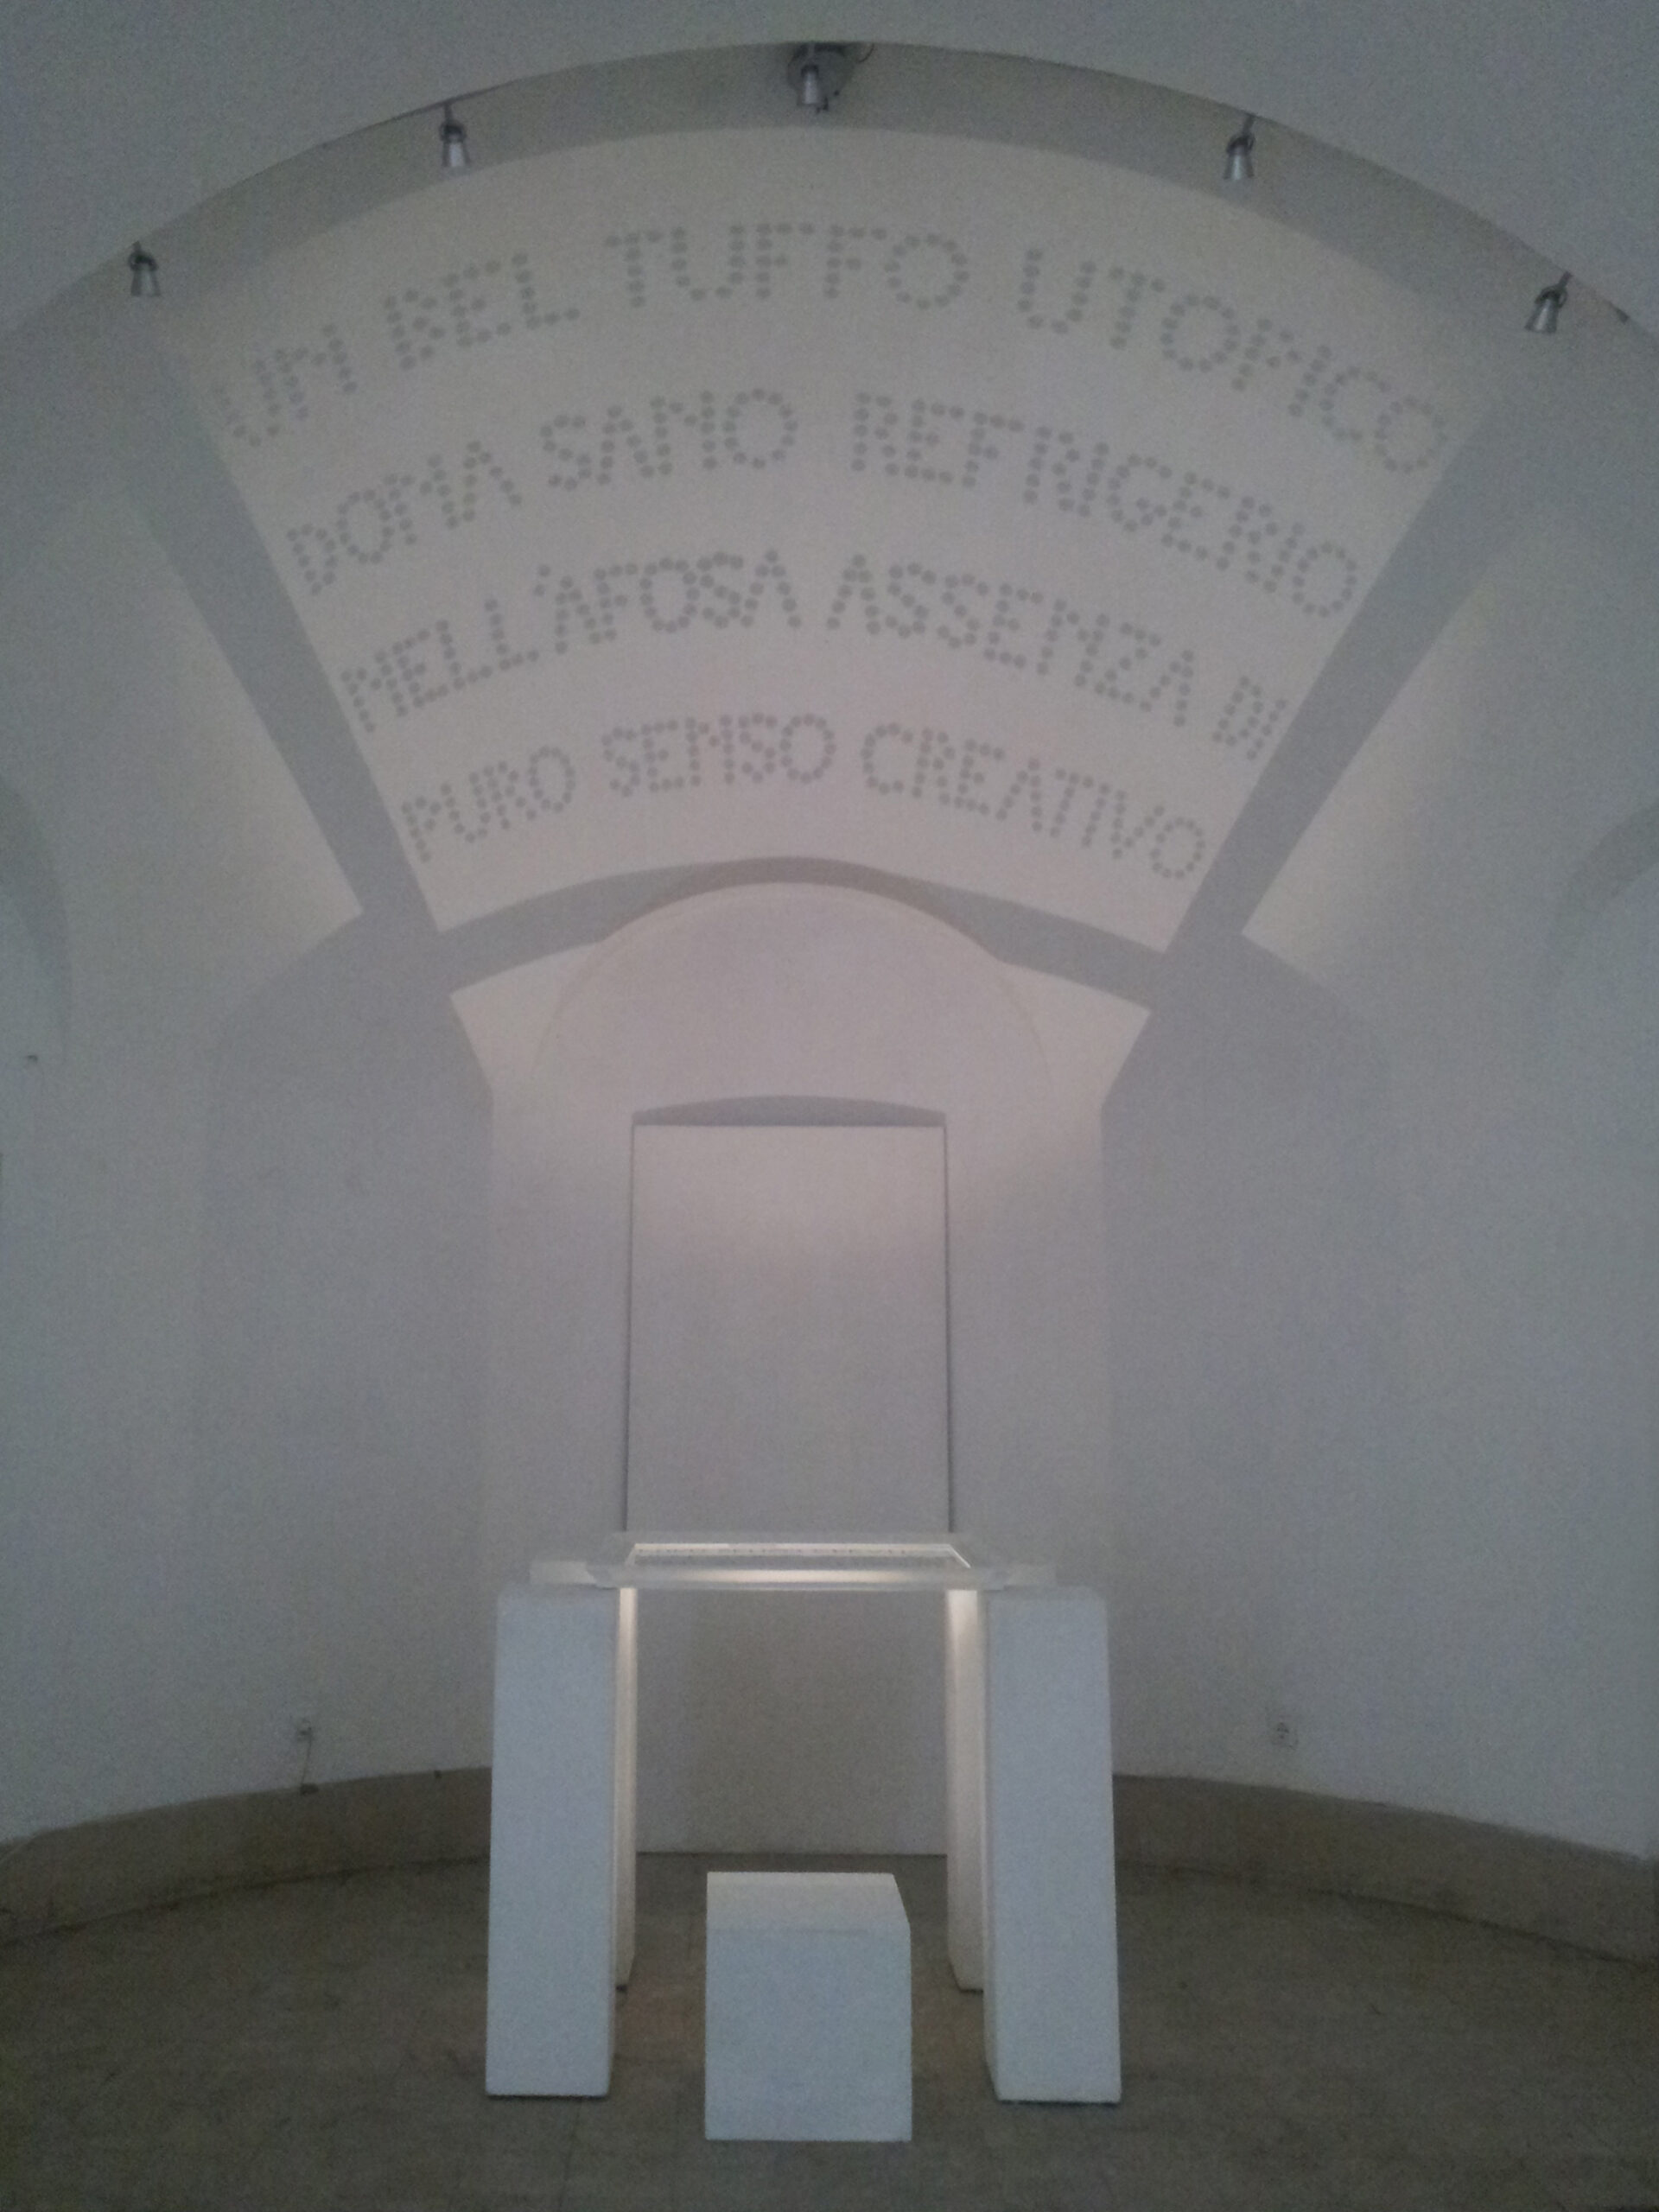 RiflessiOne utopicA, Accademia di Romania, Roma 2013